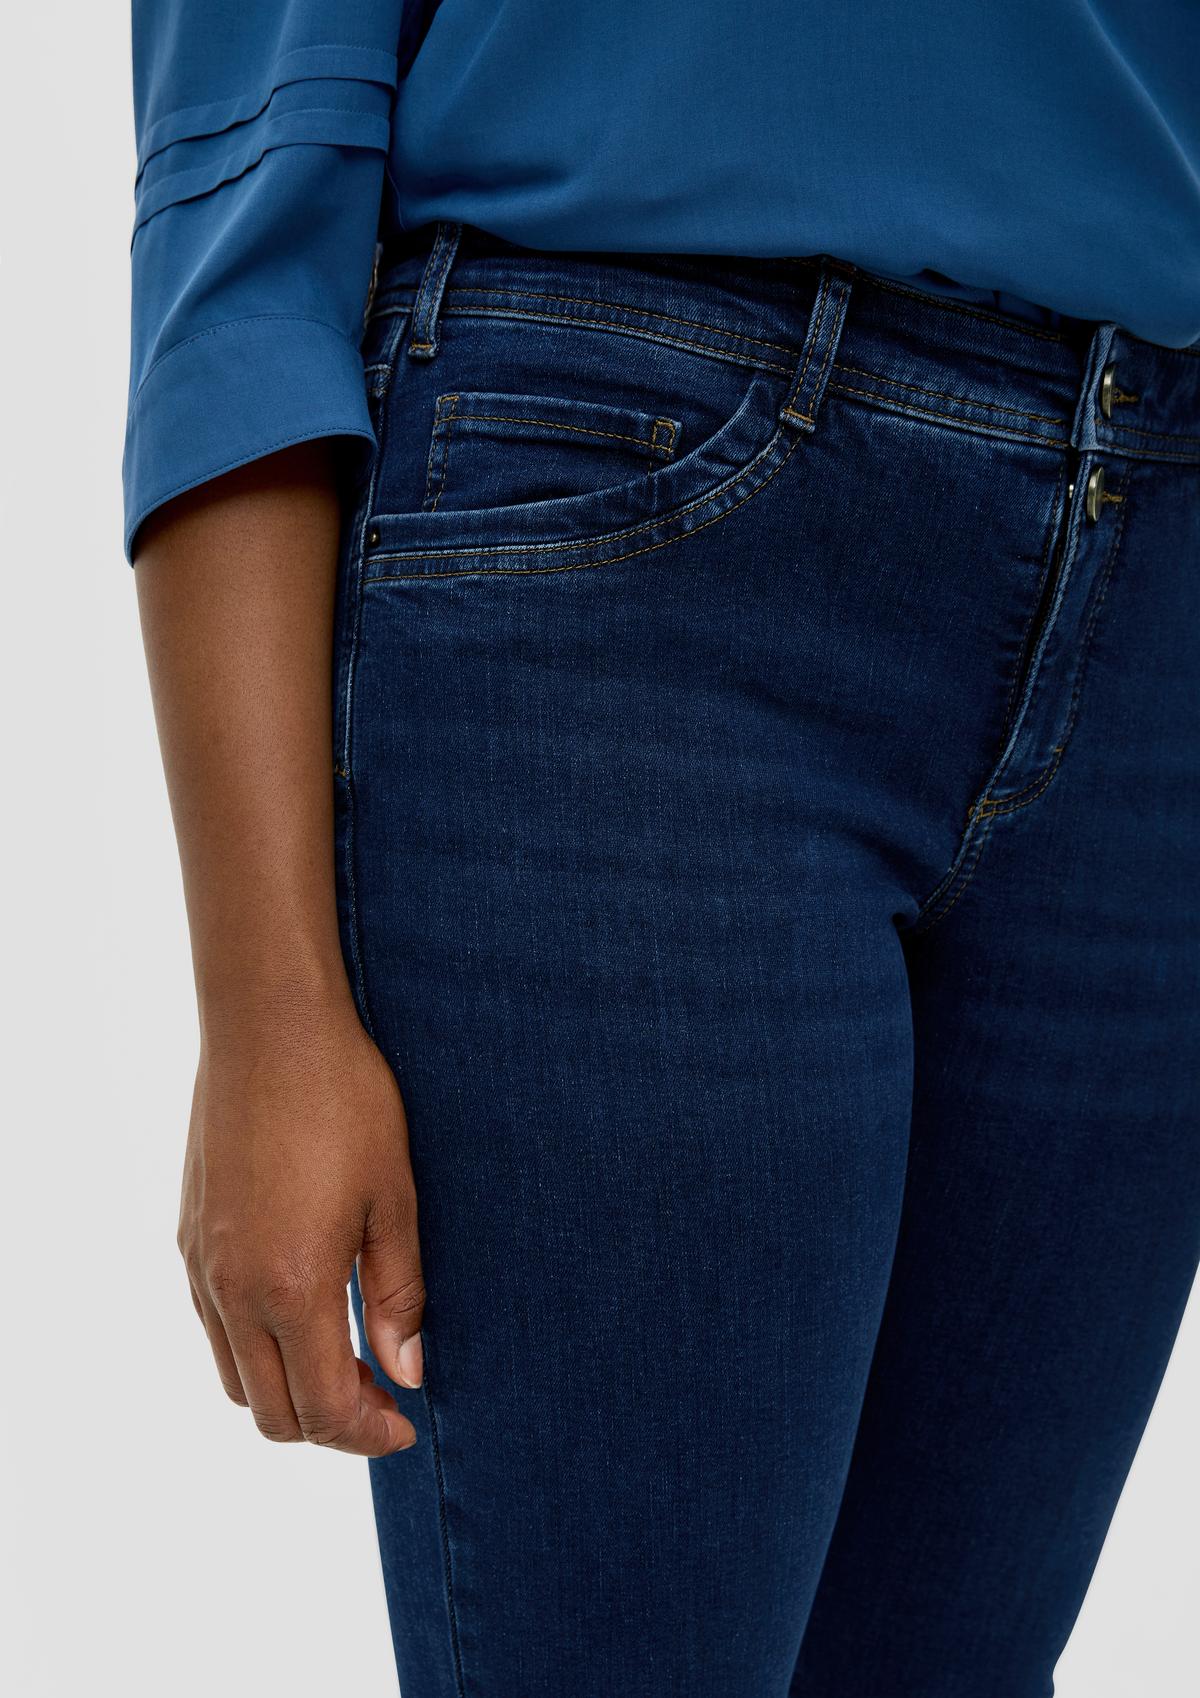 s.Oliver Jeans / skinny fit / mid rise / skinny leg / five-pocket design